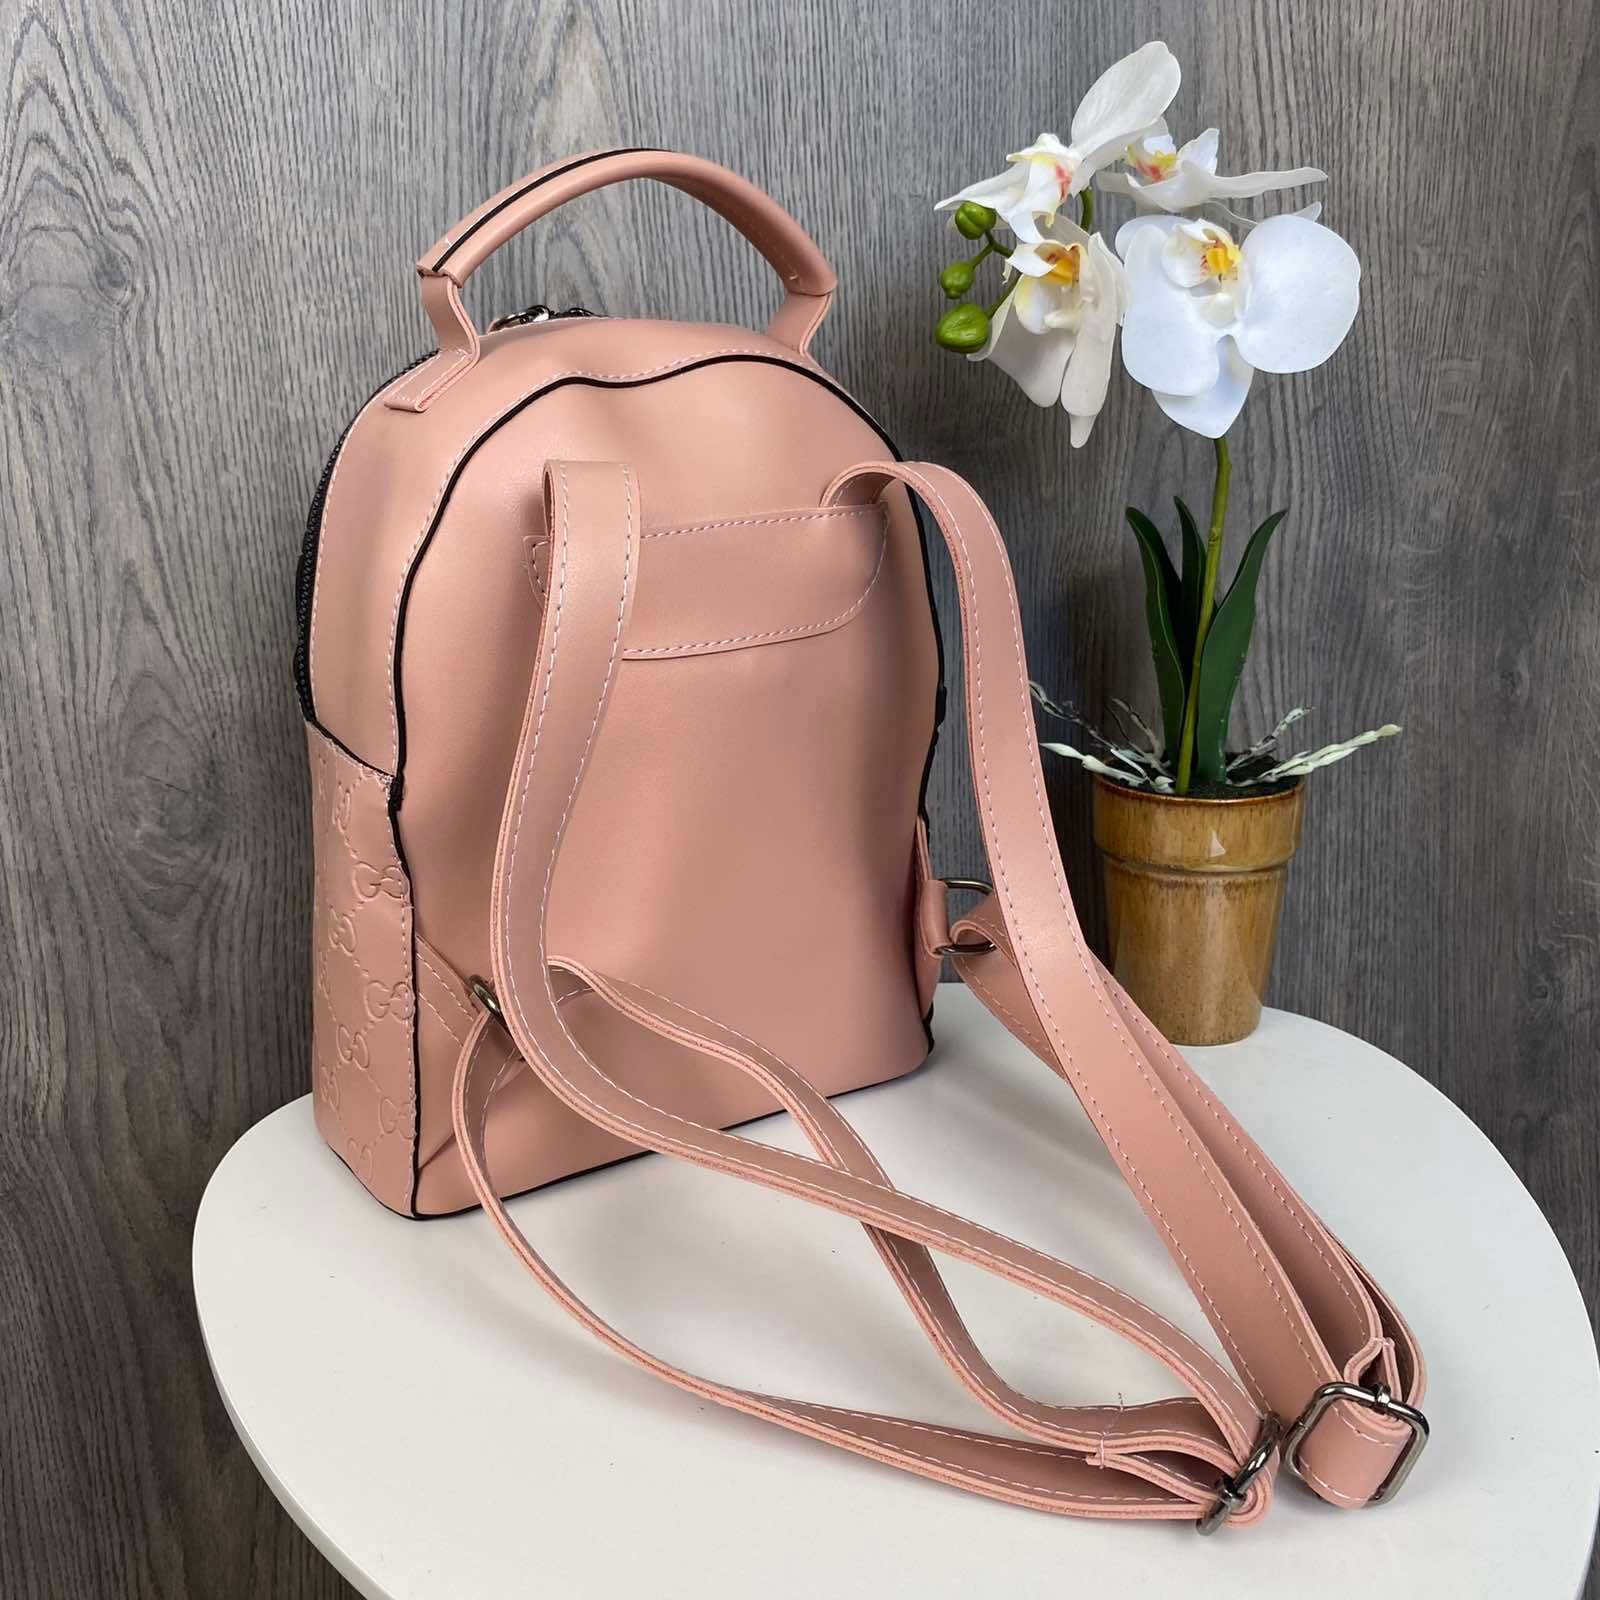 Женский мини рюкзак Гучи молочный серебристый розовый рюкзачек сумка